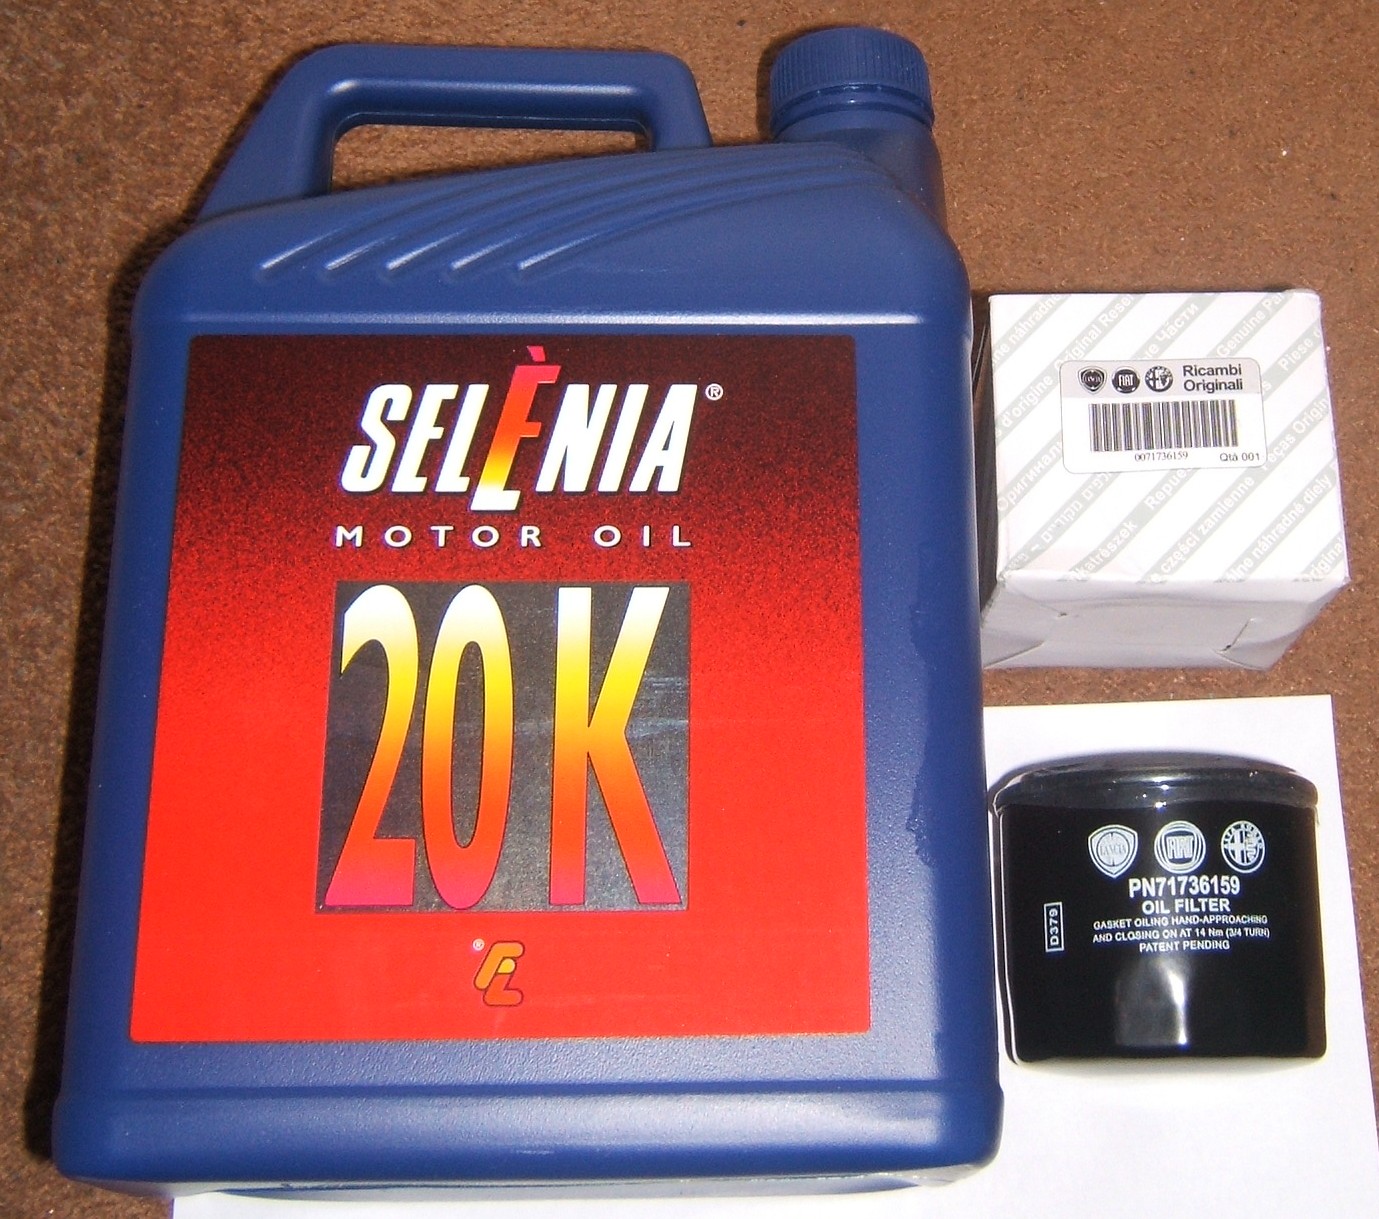 Selenia 20K 10w40 Oil Filter